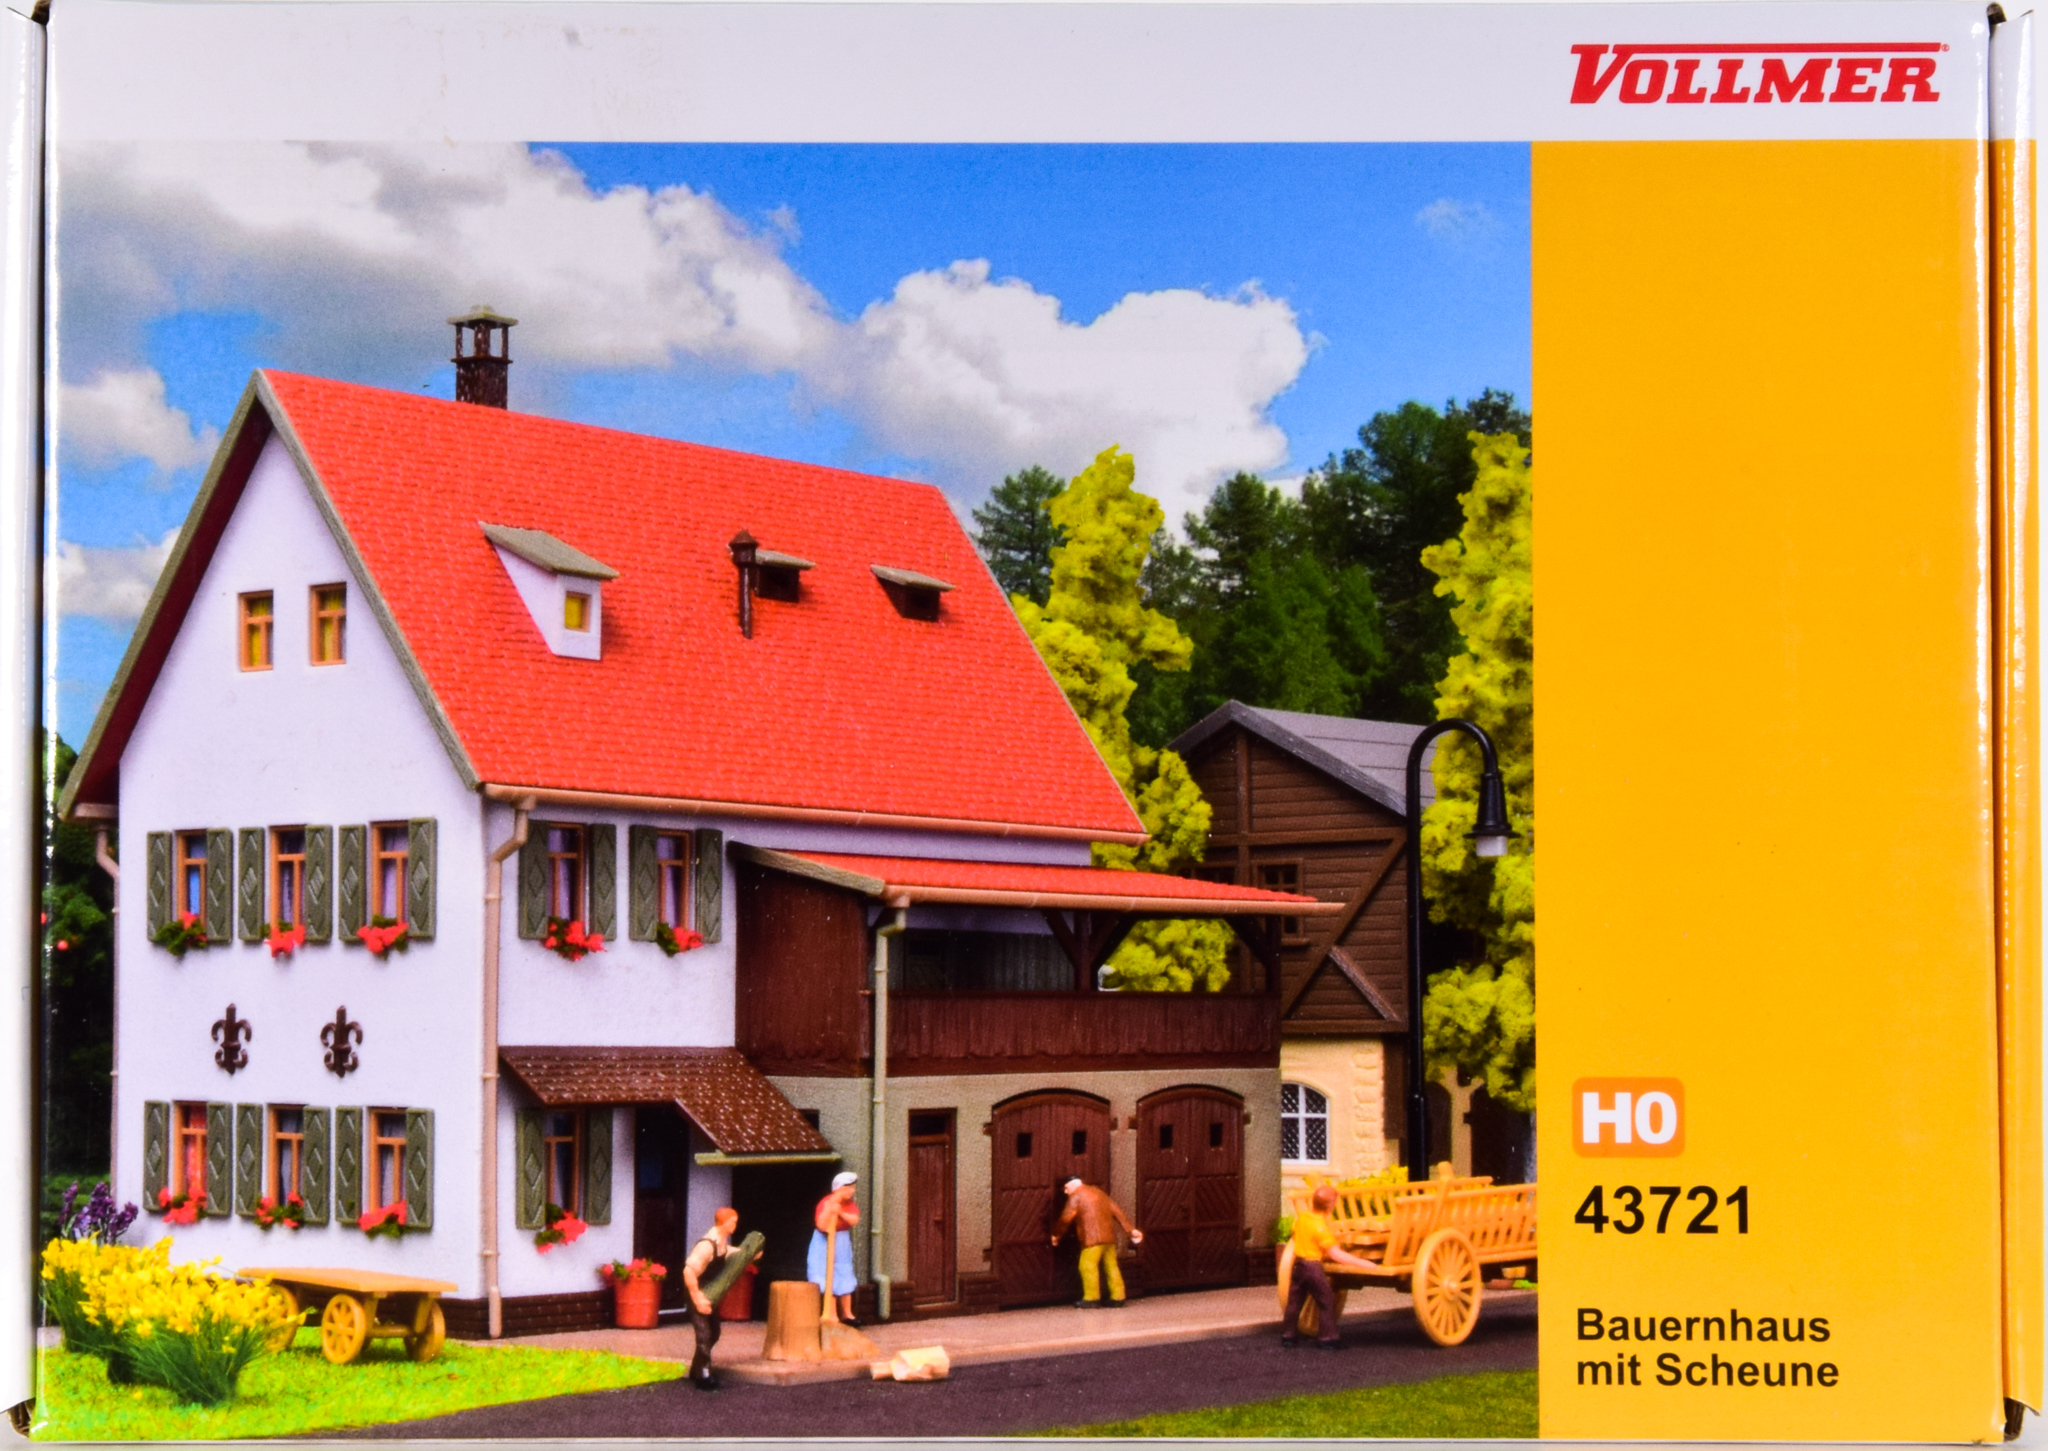 Vollmer 43721 – Bausatz Bauernhaus mit Scheune